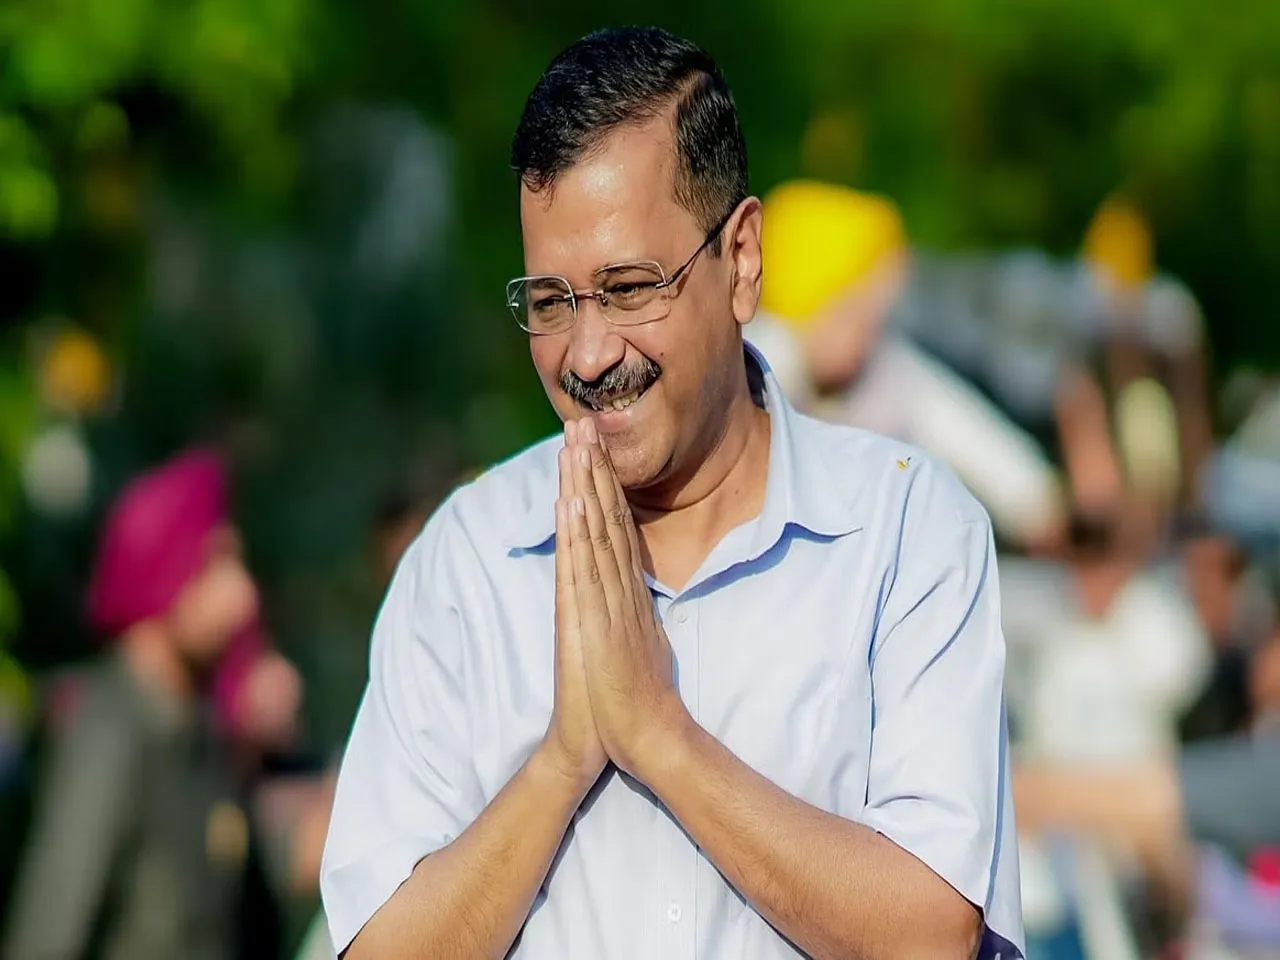 'ম্যায় ভি কেজরিওয়াল'! মেট্রো স্টেশনে কাগজ বিলি করছে AAP